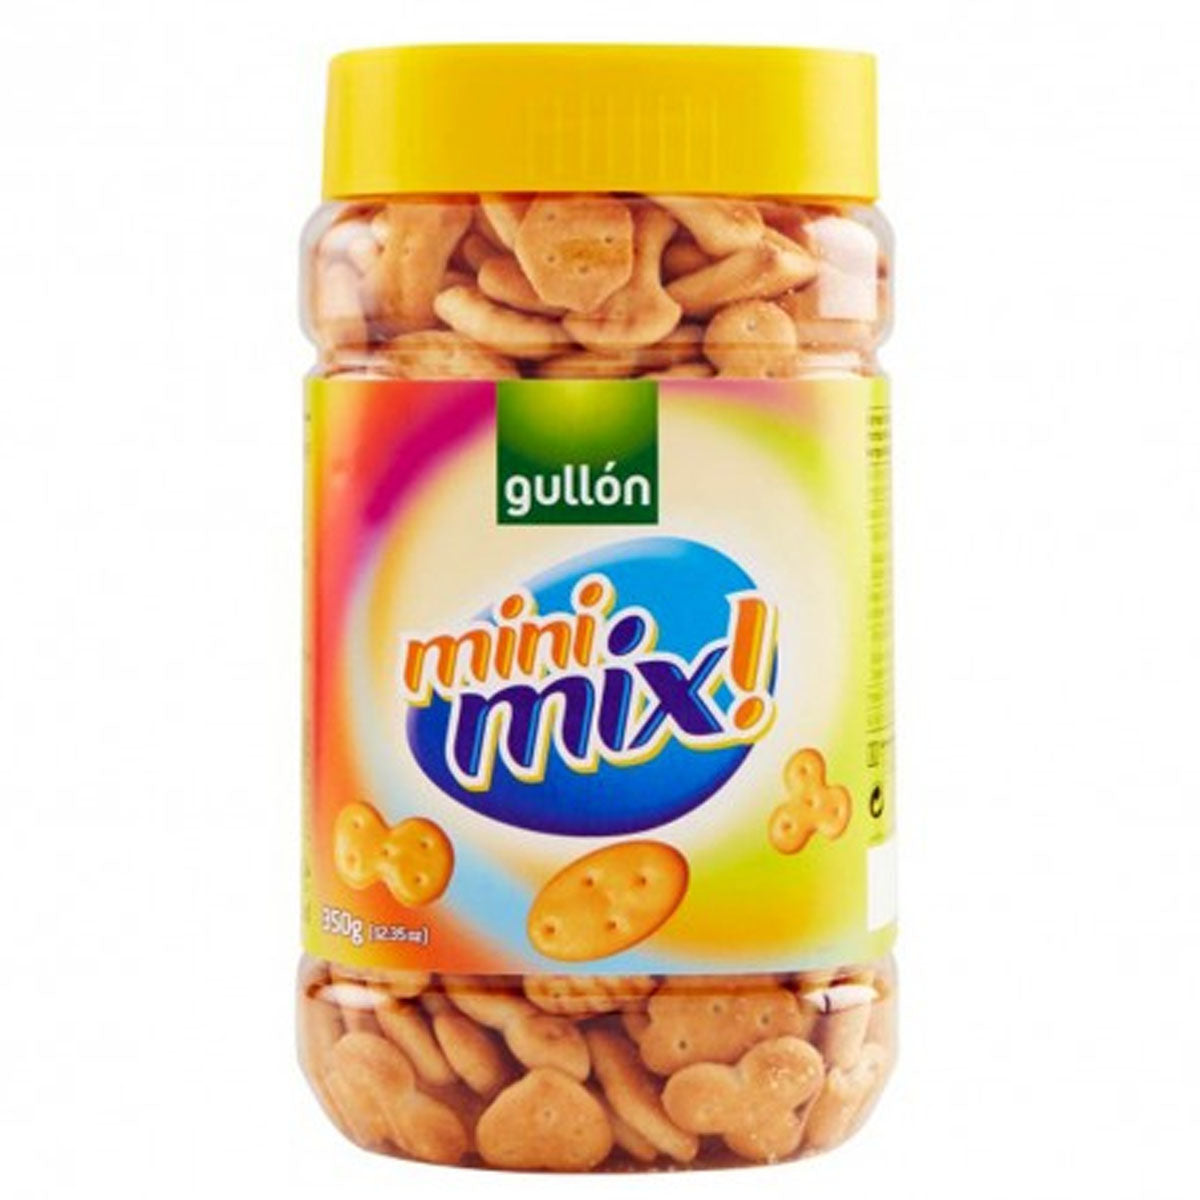 Gullon - Mini Mix - 350g - Continental Food Store